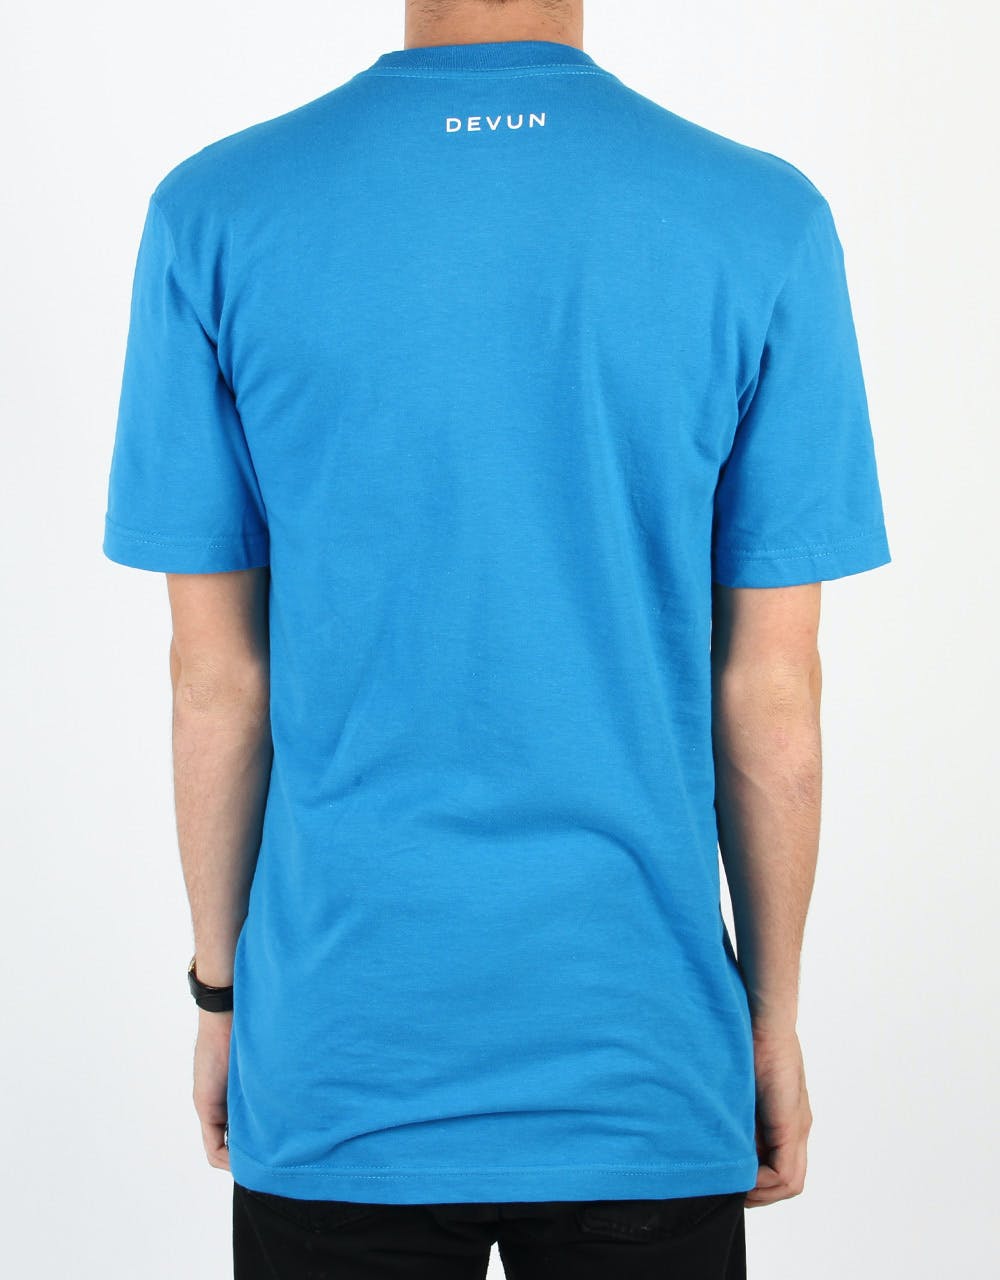 DC Devun Pro T-Shirt - Blue